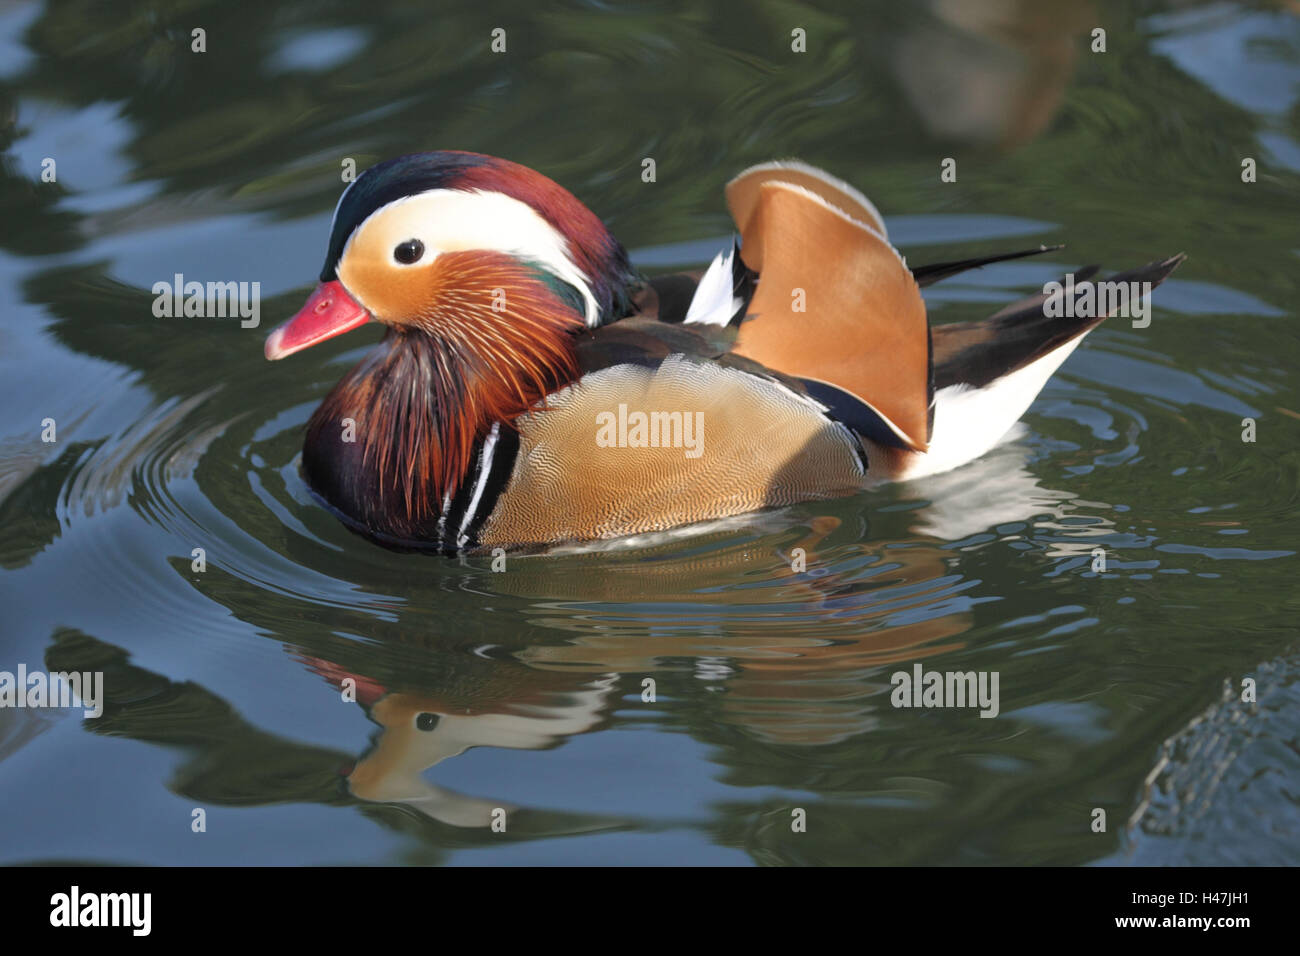 Anatra di mandarino, maschio nell'acqua, Foto Stock